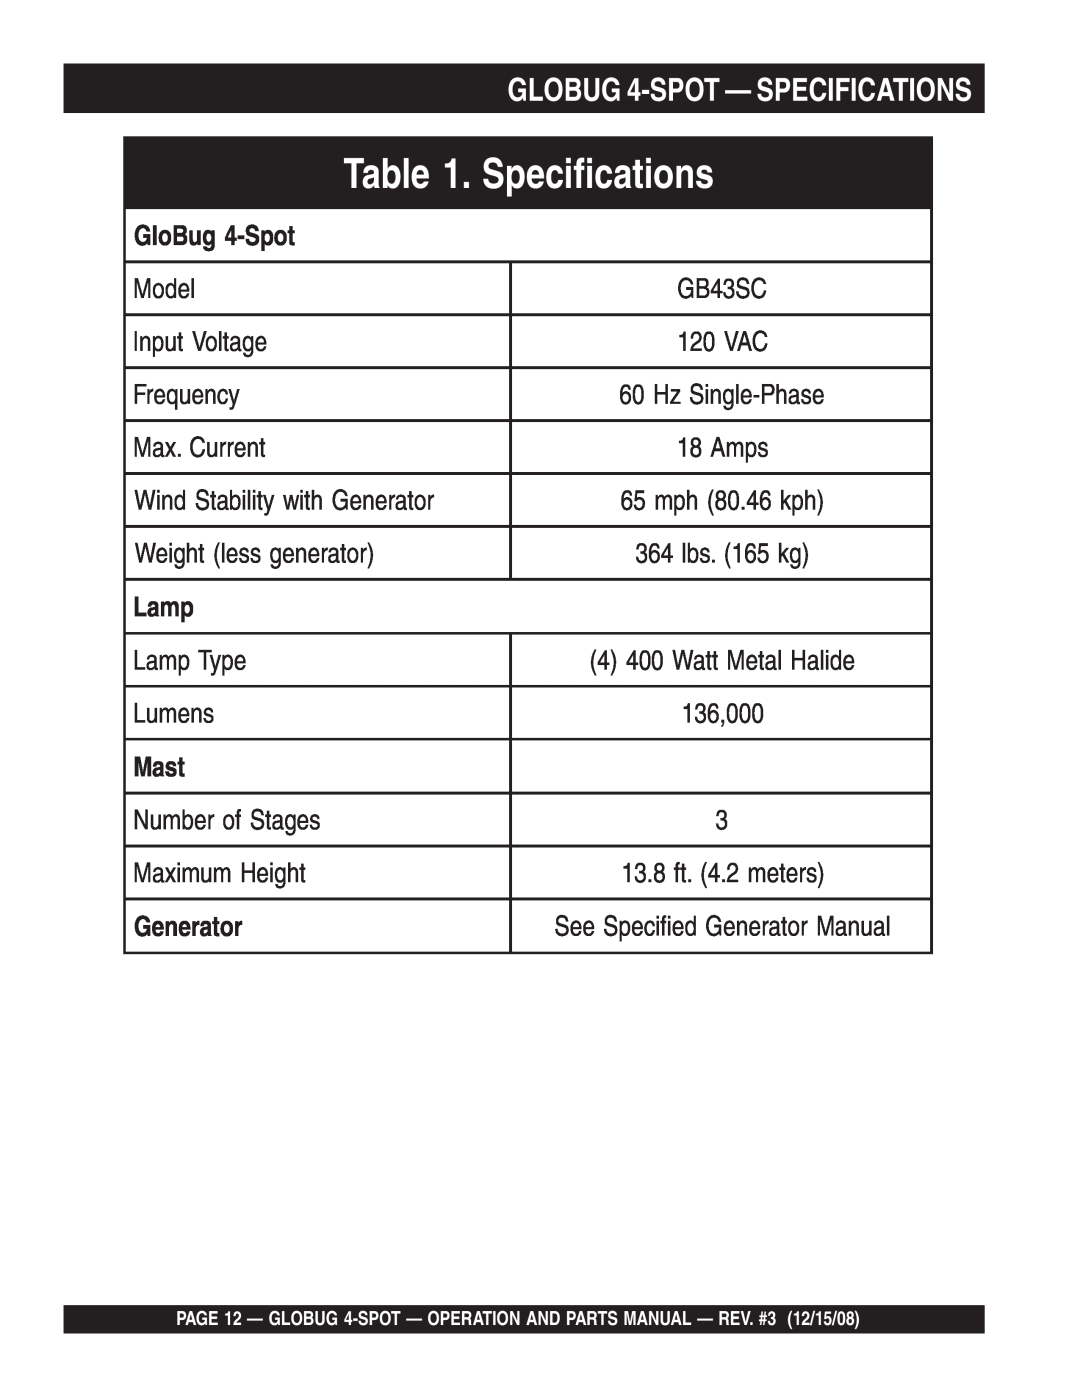 Multiquip gb43sc manual GloBug 4-Spot, Lamp, Mast, Generator, Specifications 